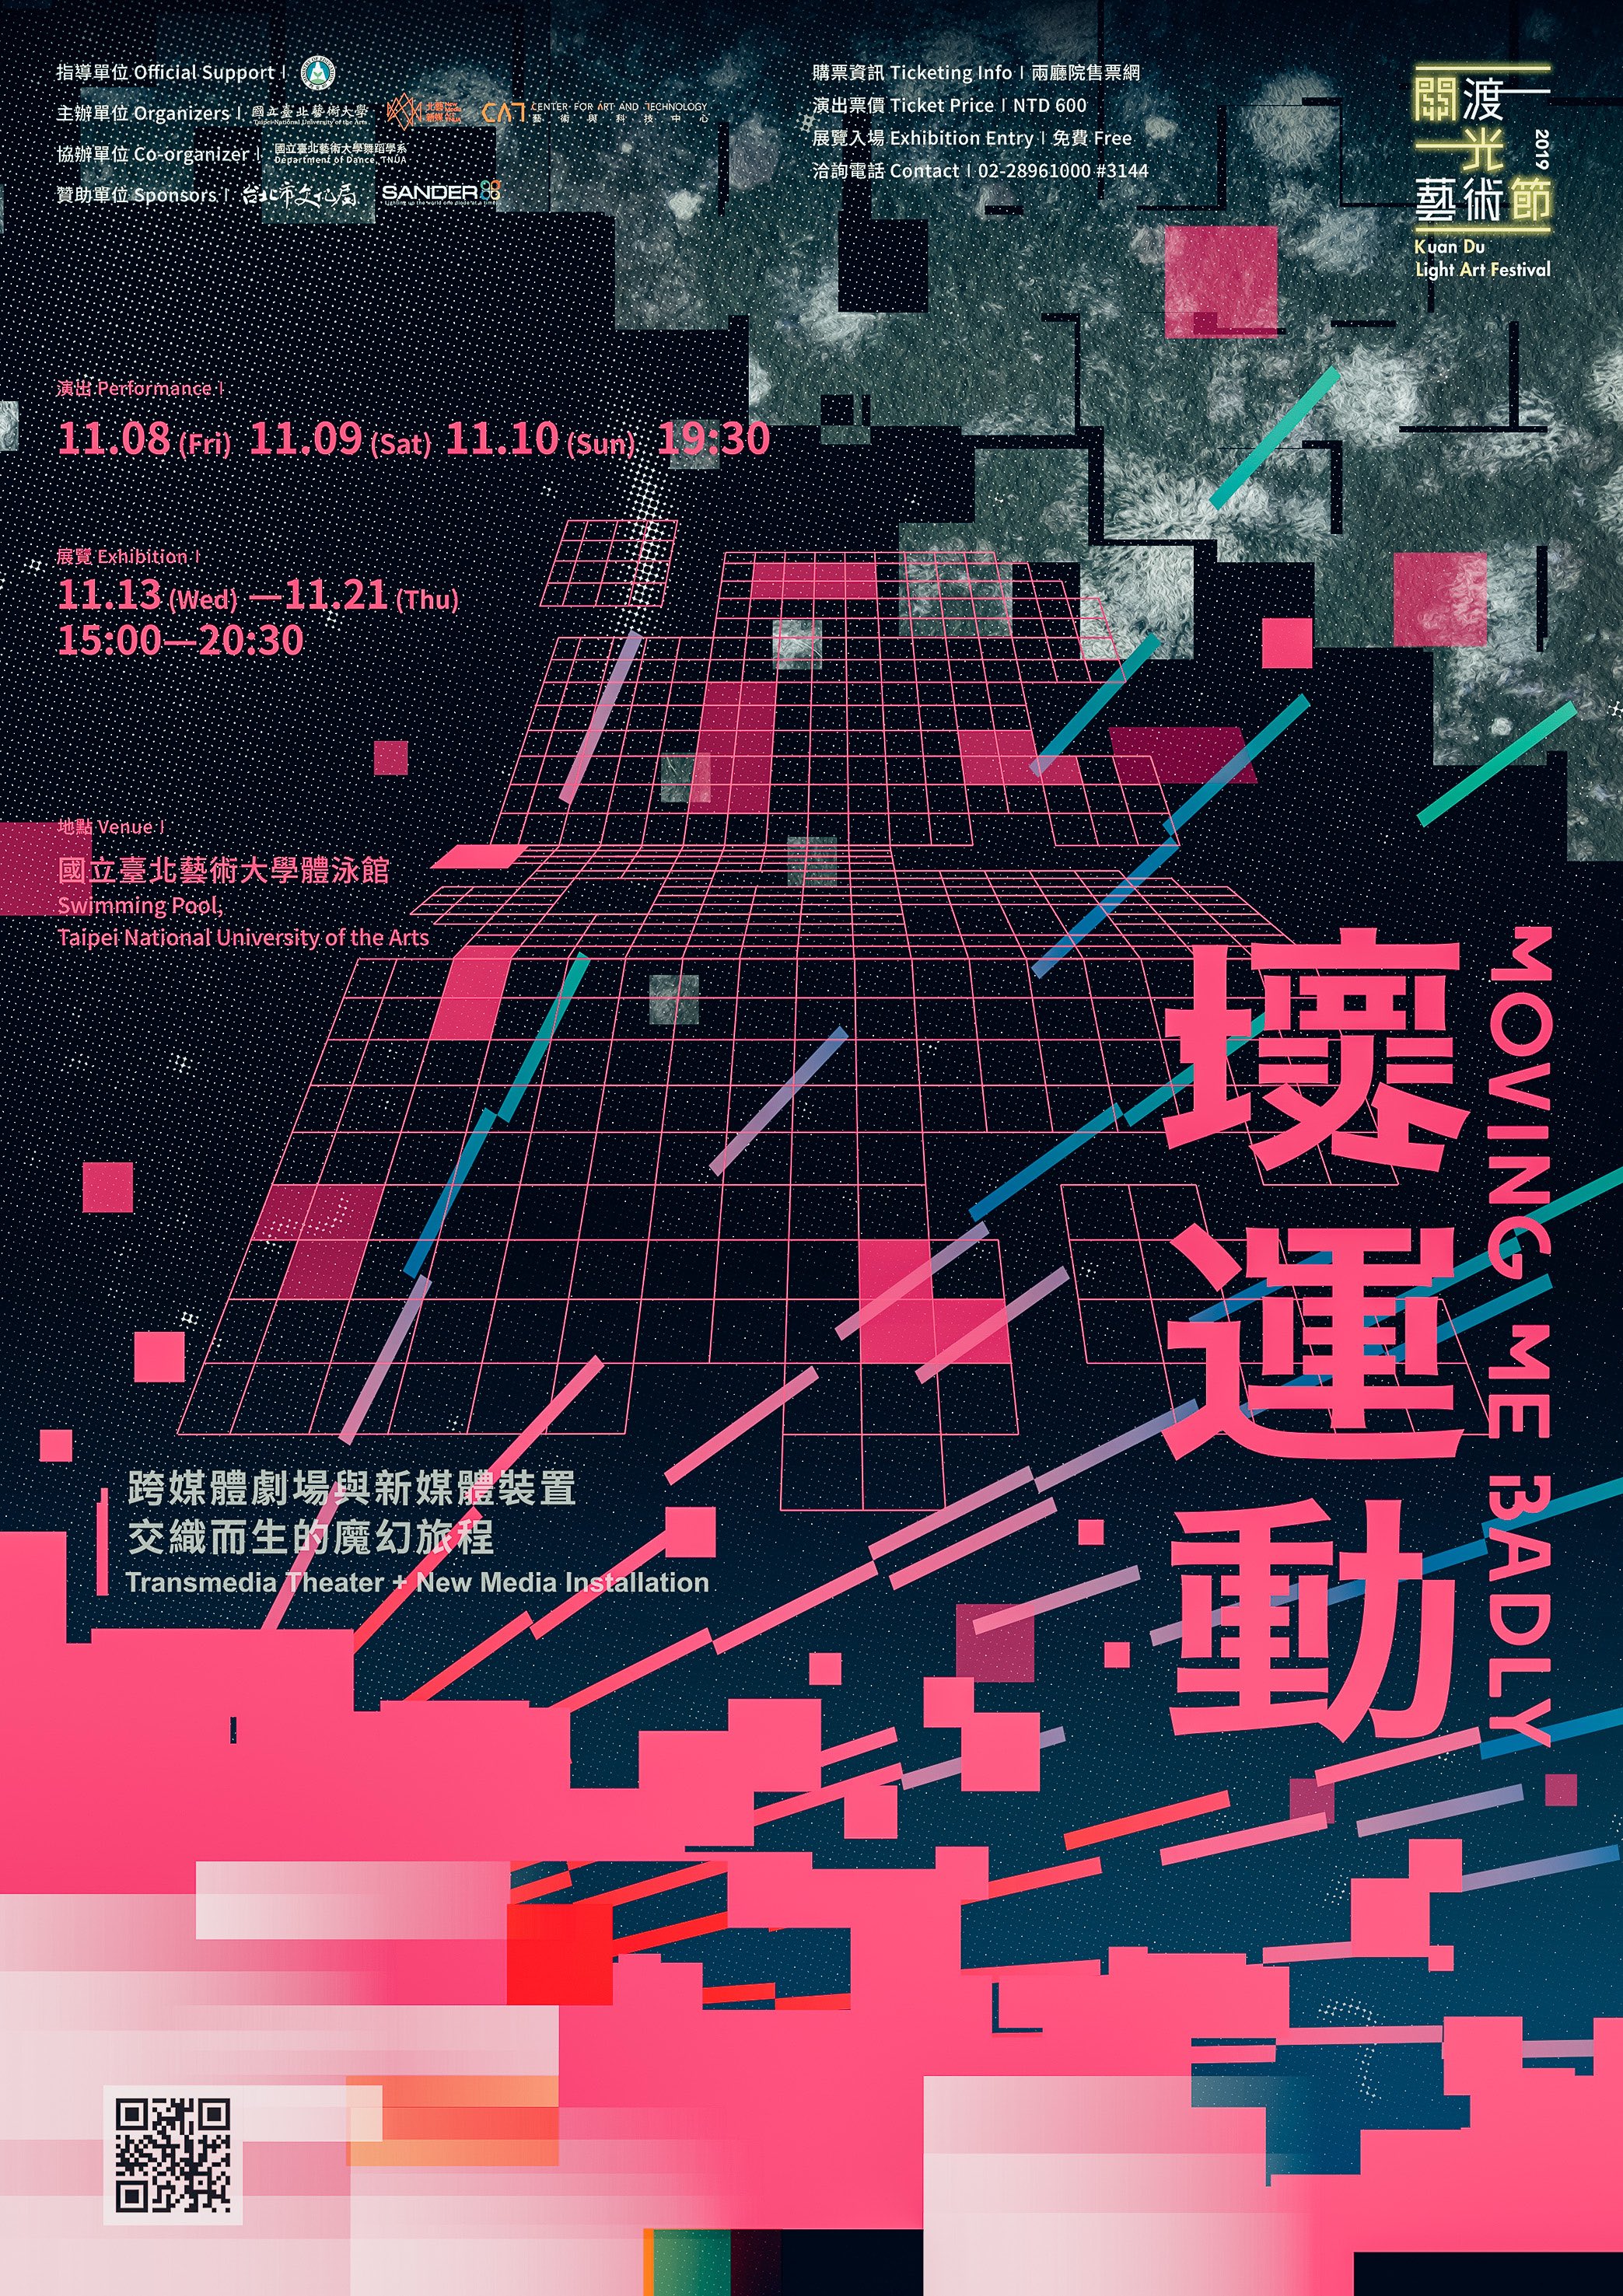 2019關渡光藝術節《壞運動》宣傳海報以粉紅與黑作為基調